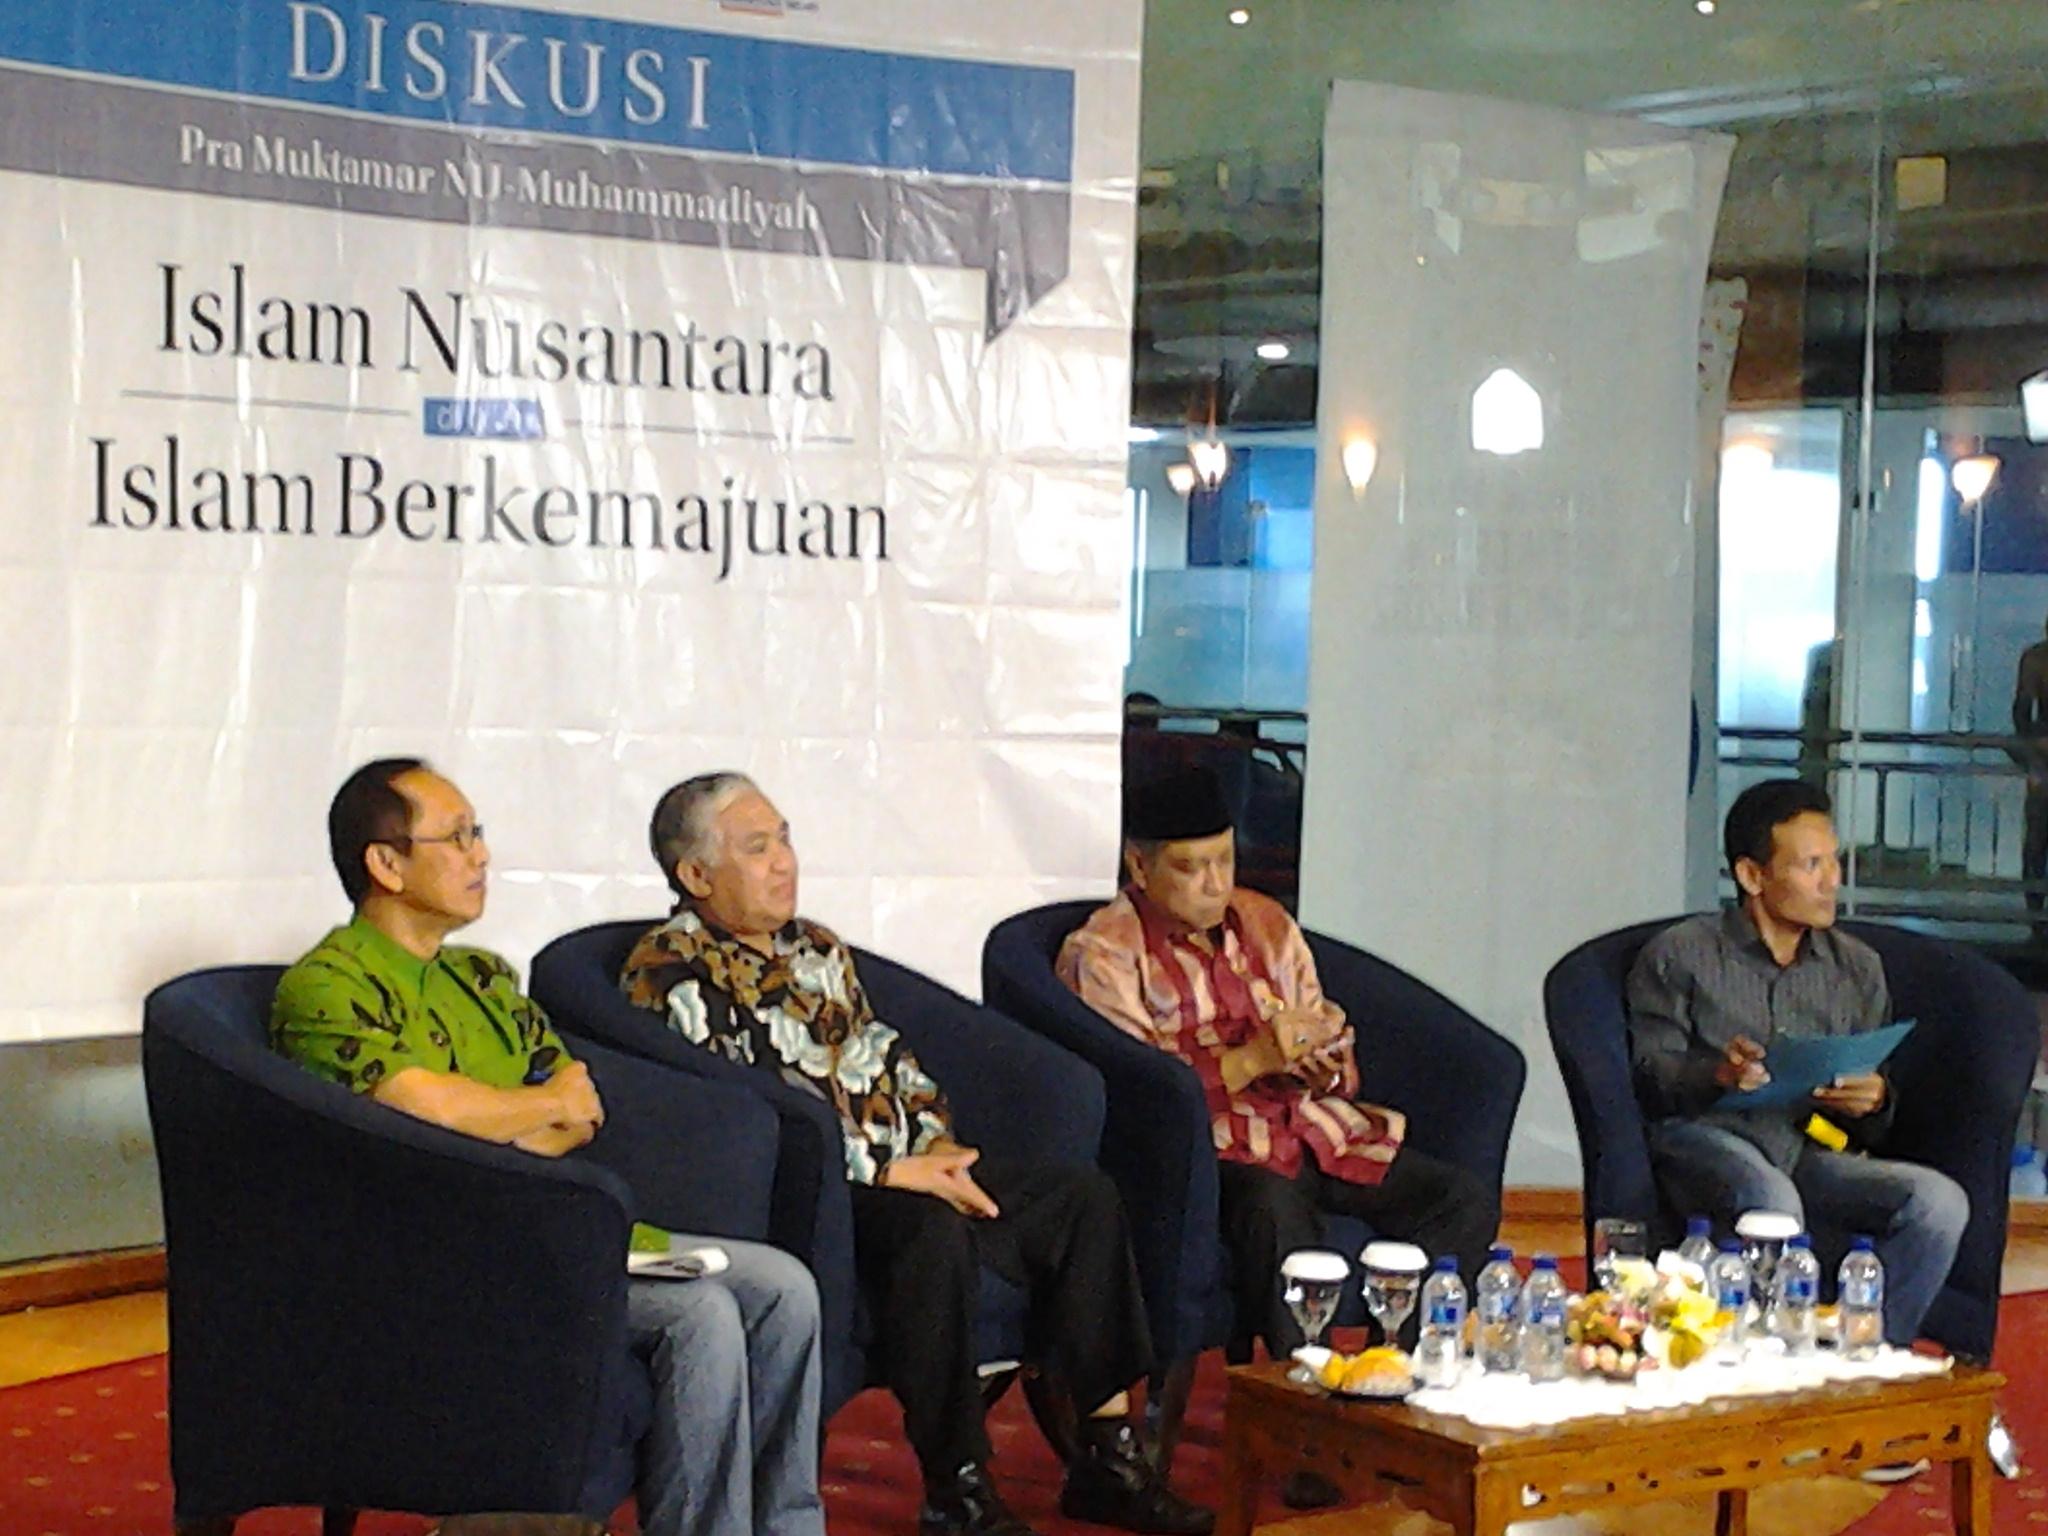 Islam Nusantara NU Bersanding dengan Islam Berkemajuan Muhammadiyah